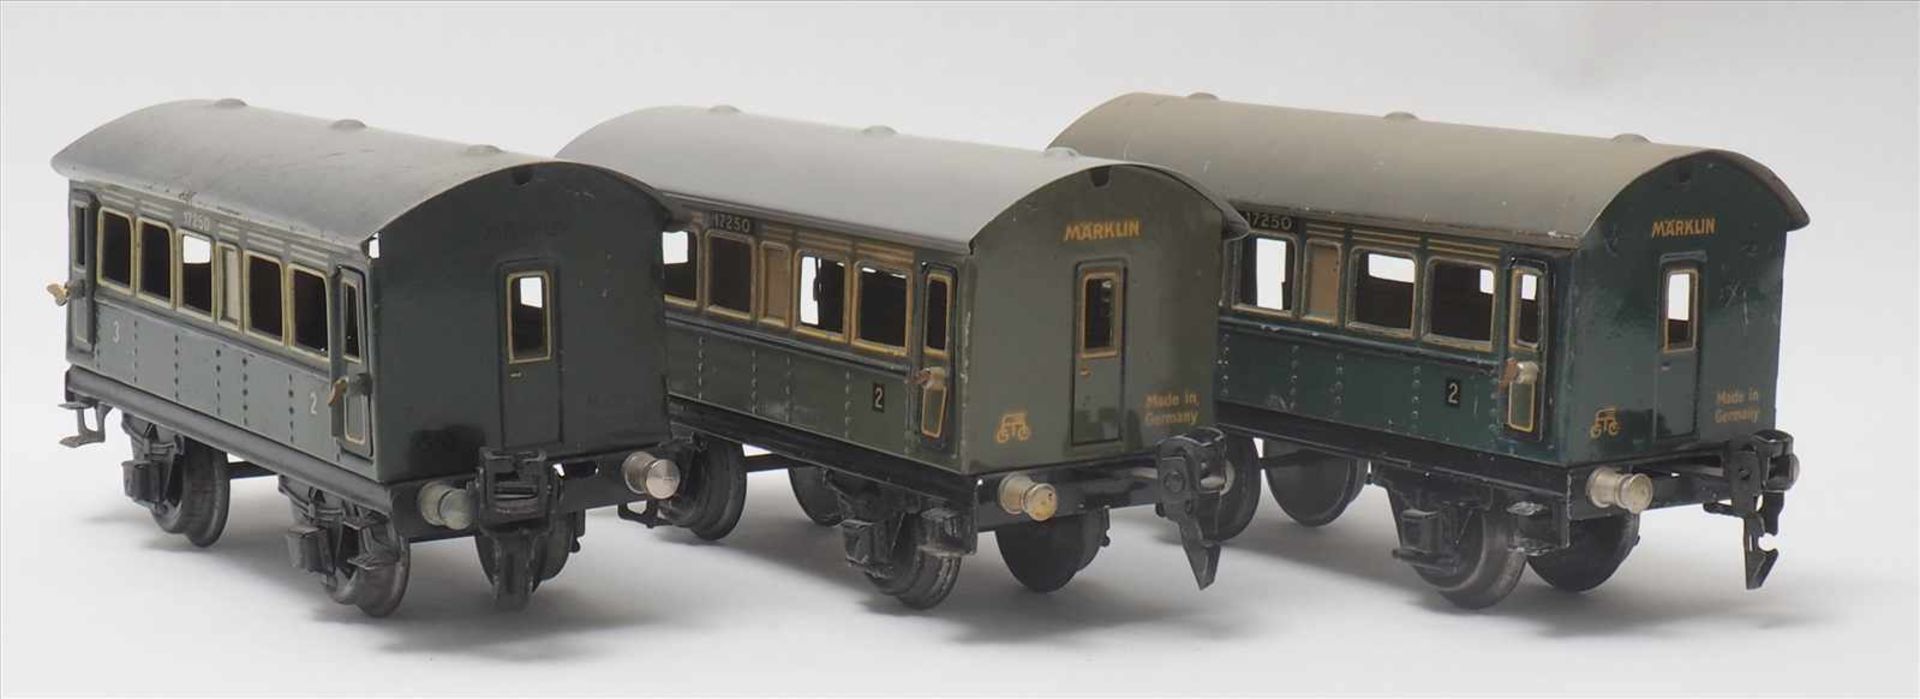 Drei PersonenwagenMärklin Spur 0. 1930-er Jahre. 2./3. Klasse, Nr. 17250. Guter, altersbedingter - Bild 2 aus 5